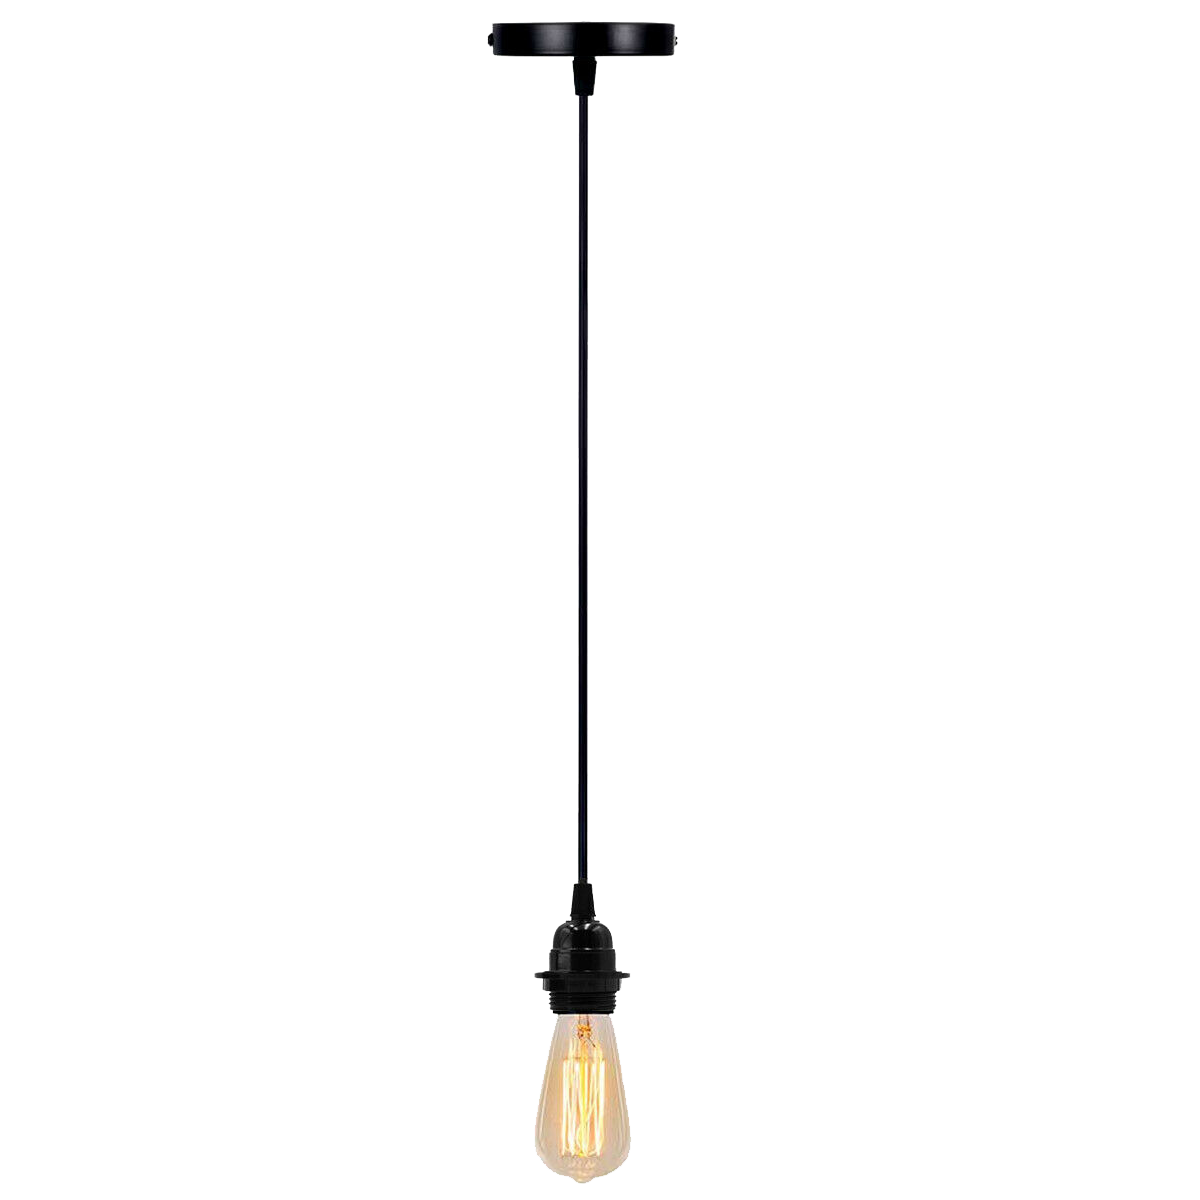 Single Outlet Ceiling E27 DIY Ceiling Rose Light PVC Flex Cluster Pendant Lamp Holder~3425 - LEDSone UK Ltd